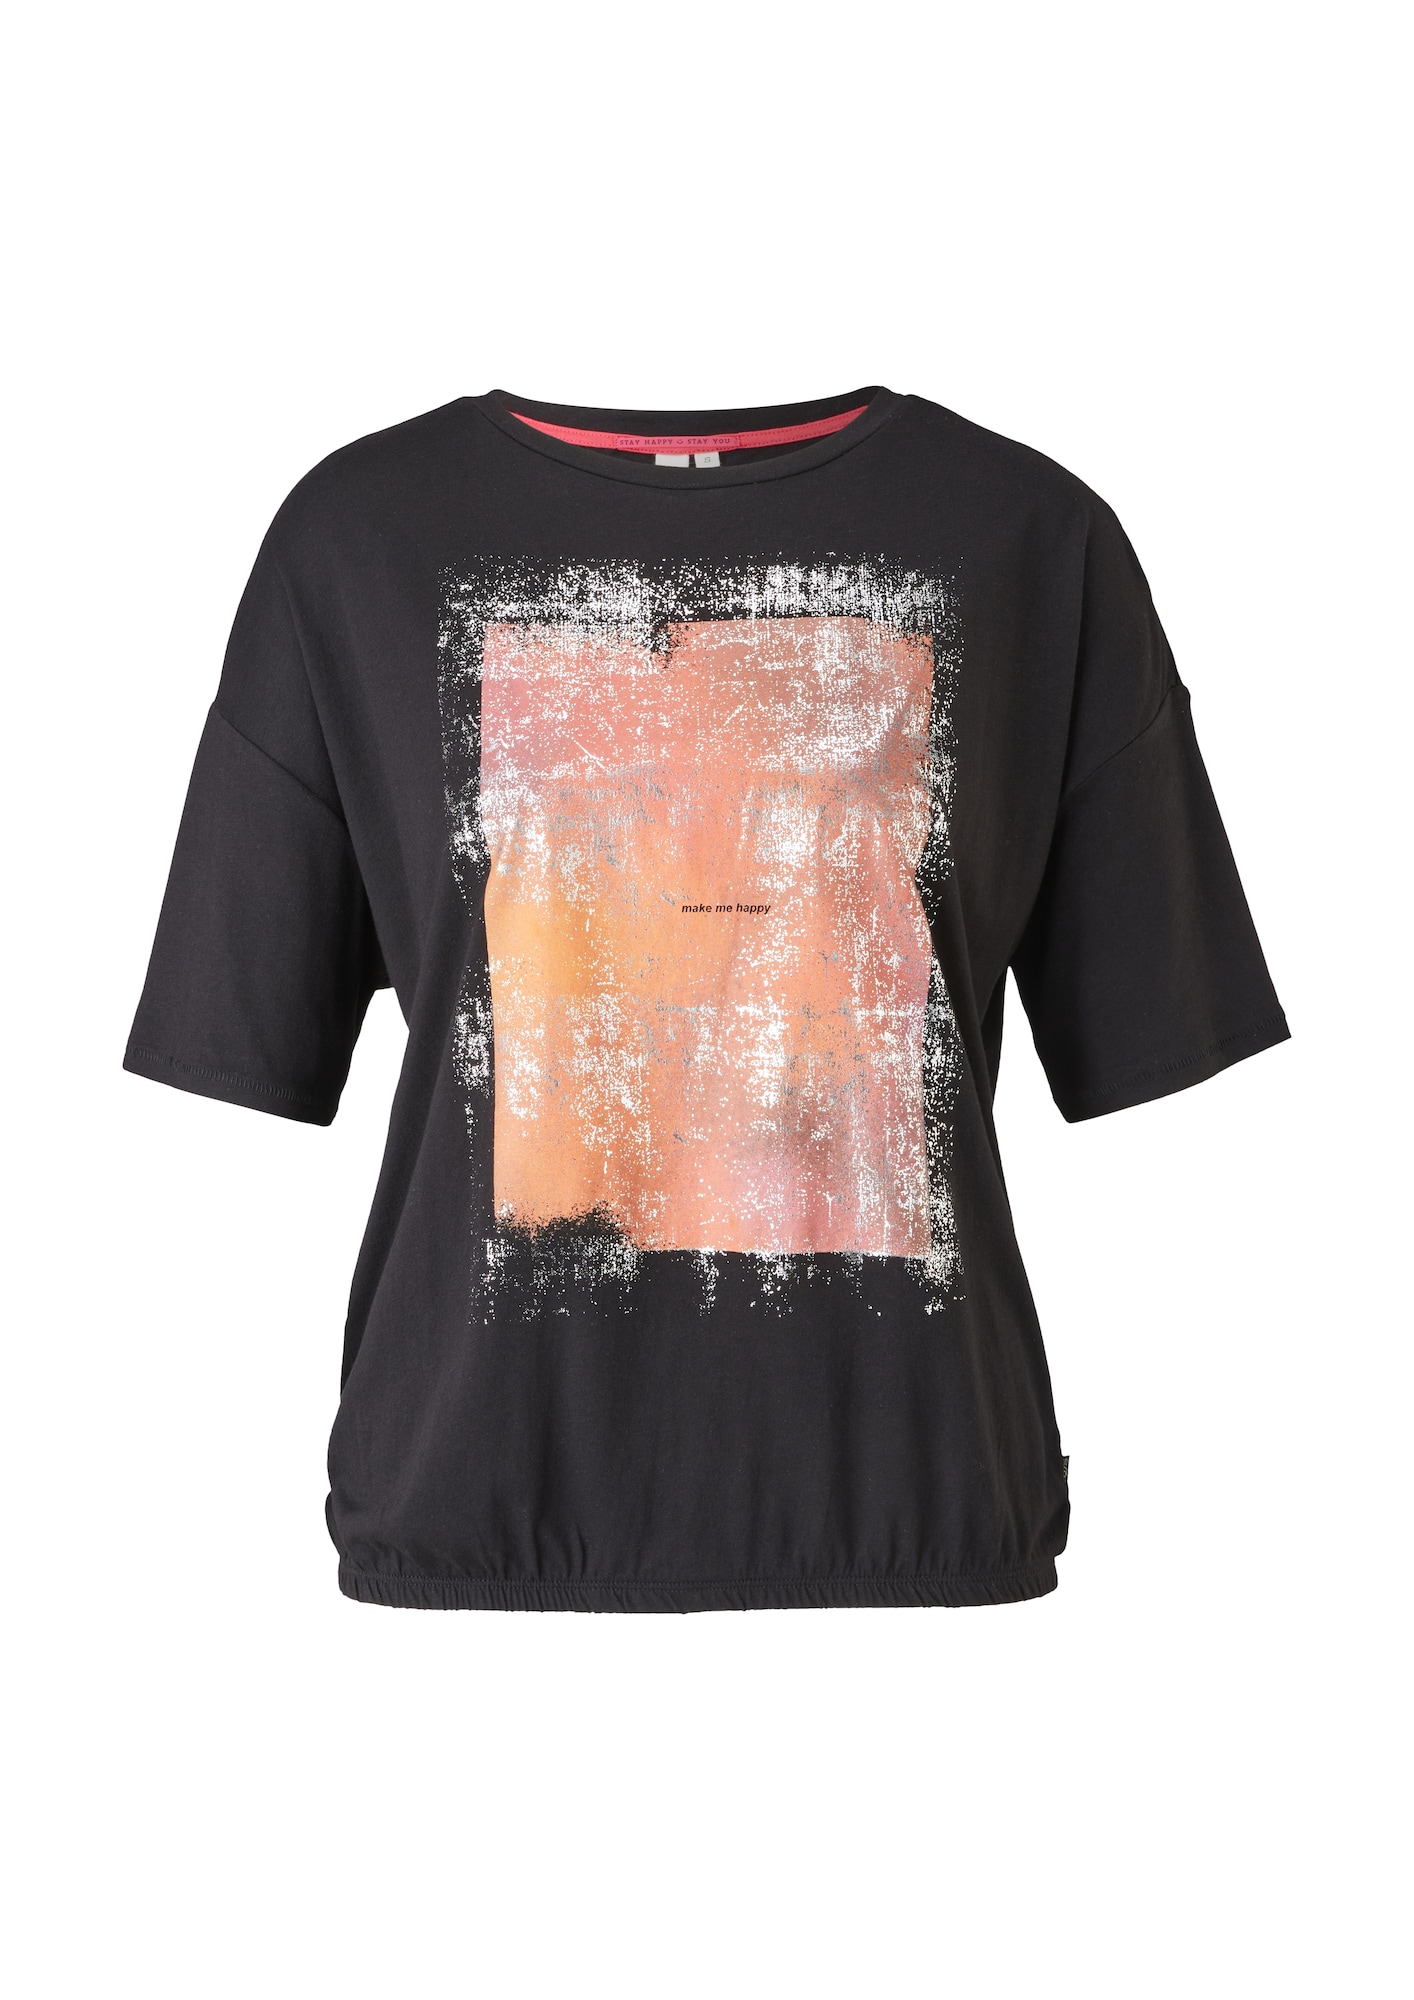 QS by s.Oliver Shirt schwarz / orange / silber / pink